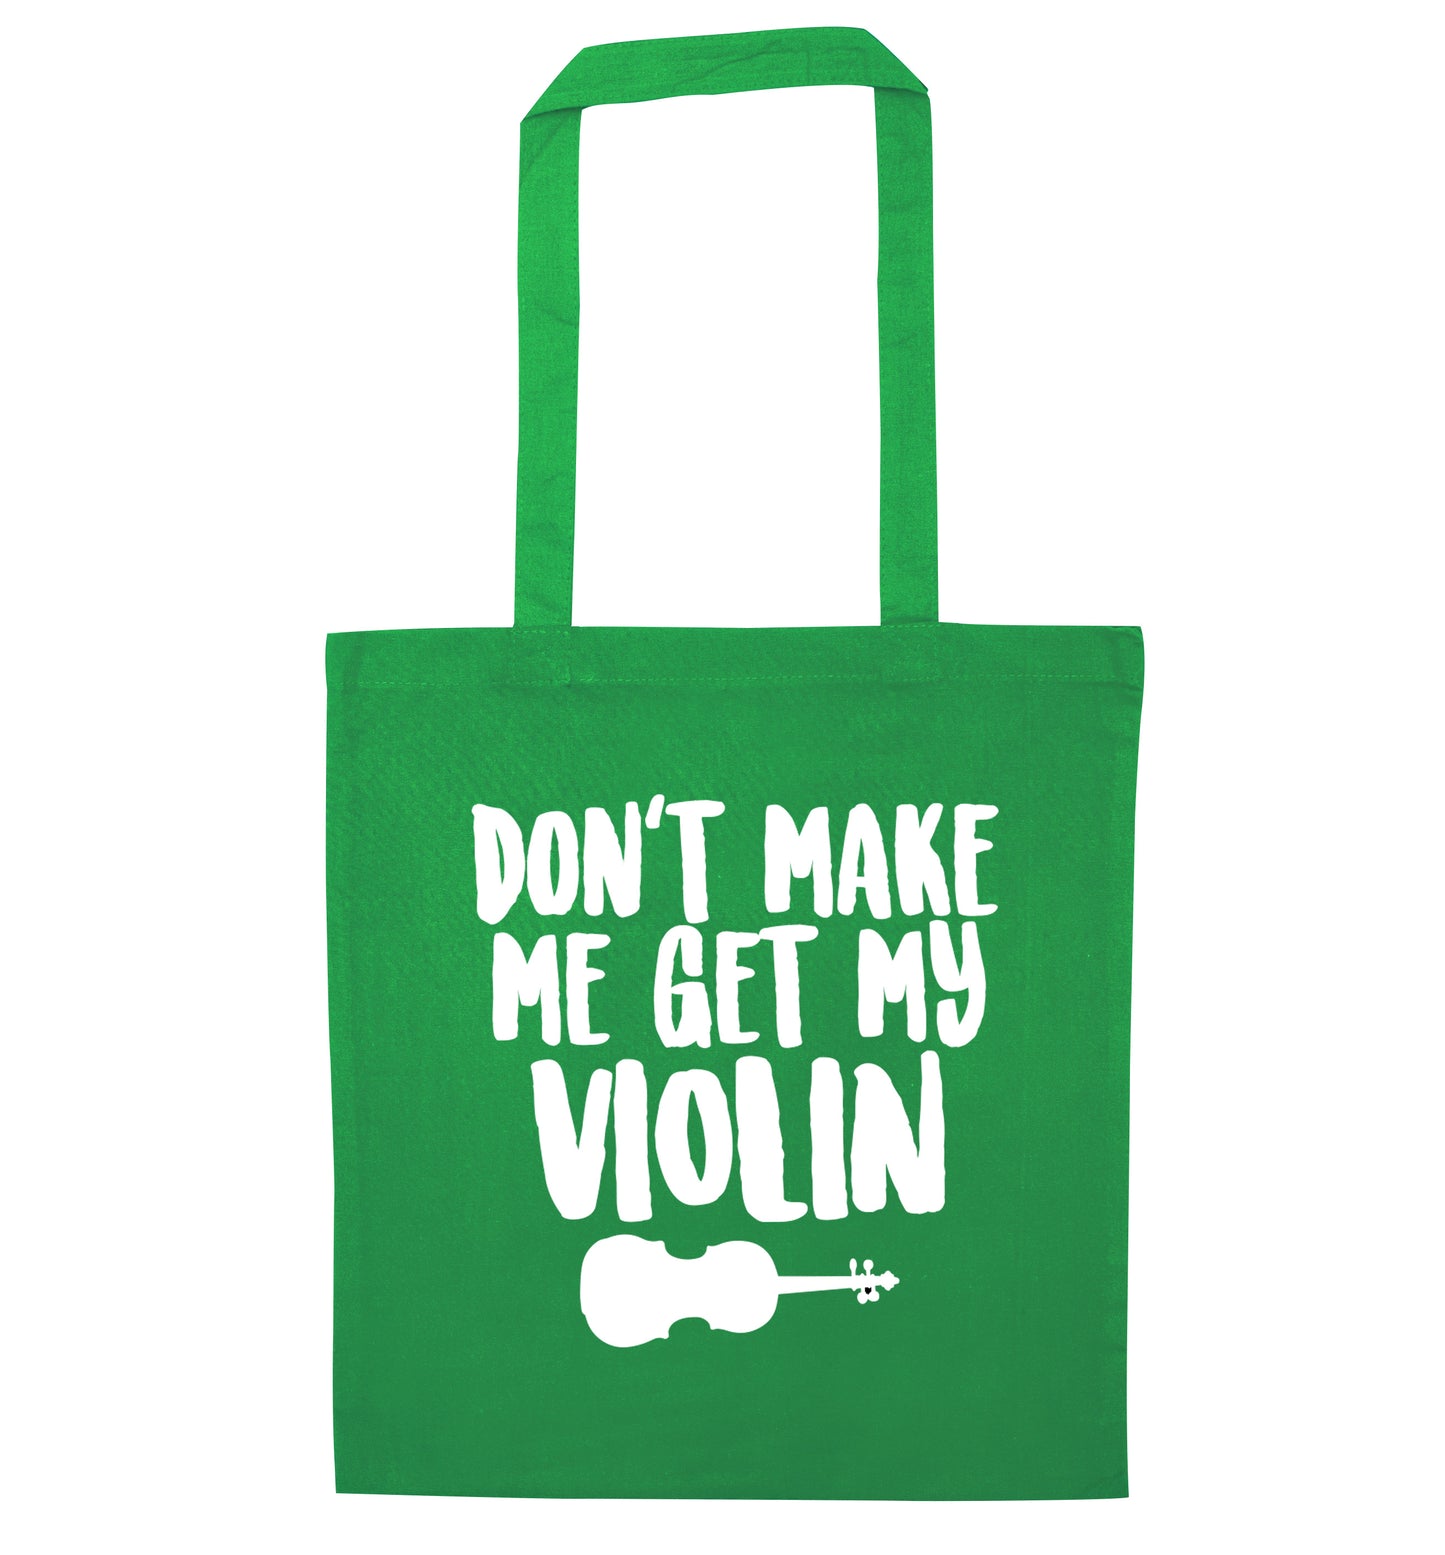 Don't make me get my violin green tote bag